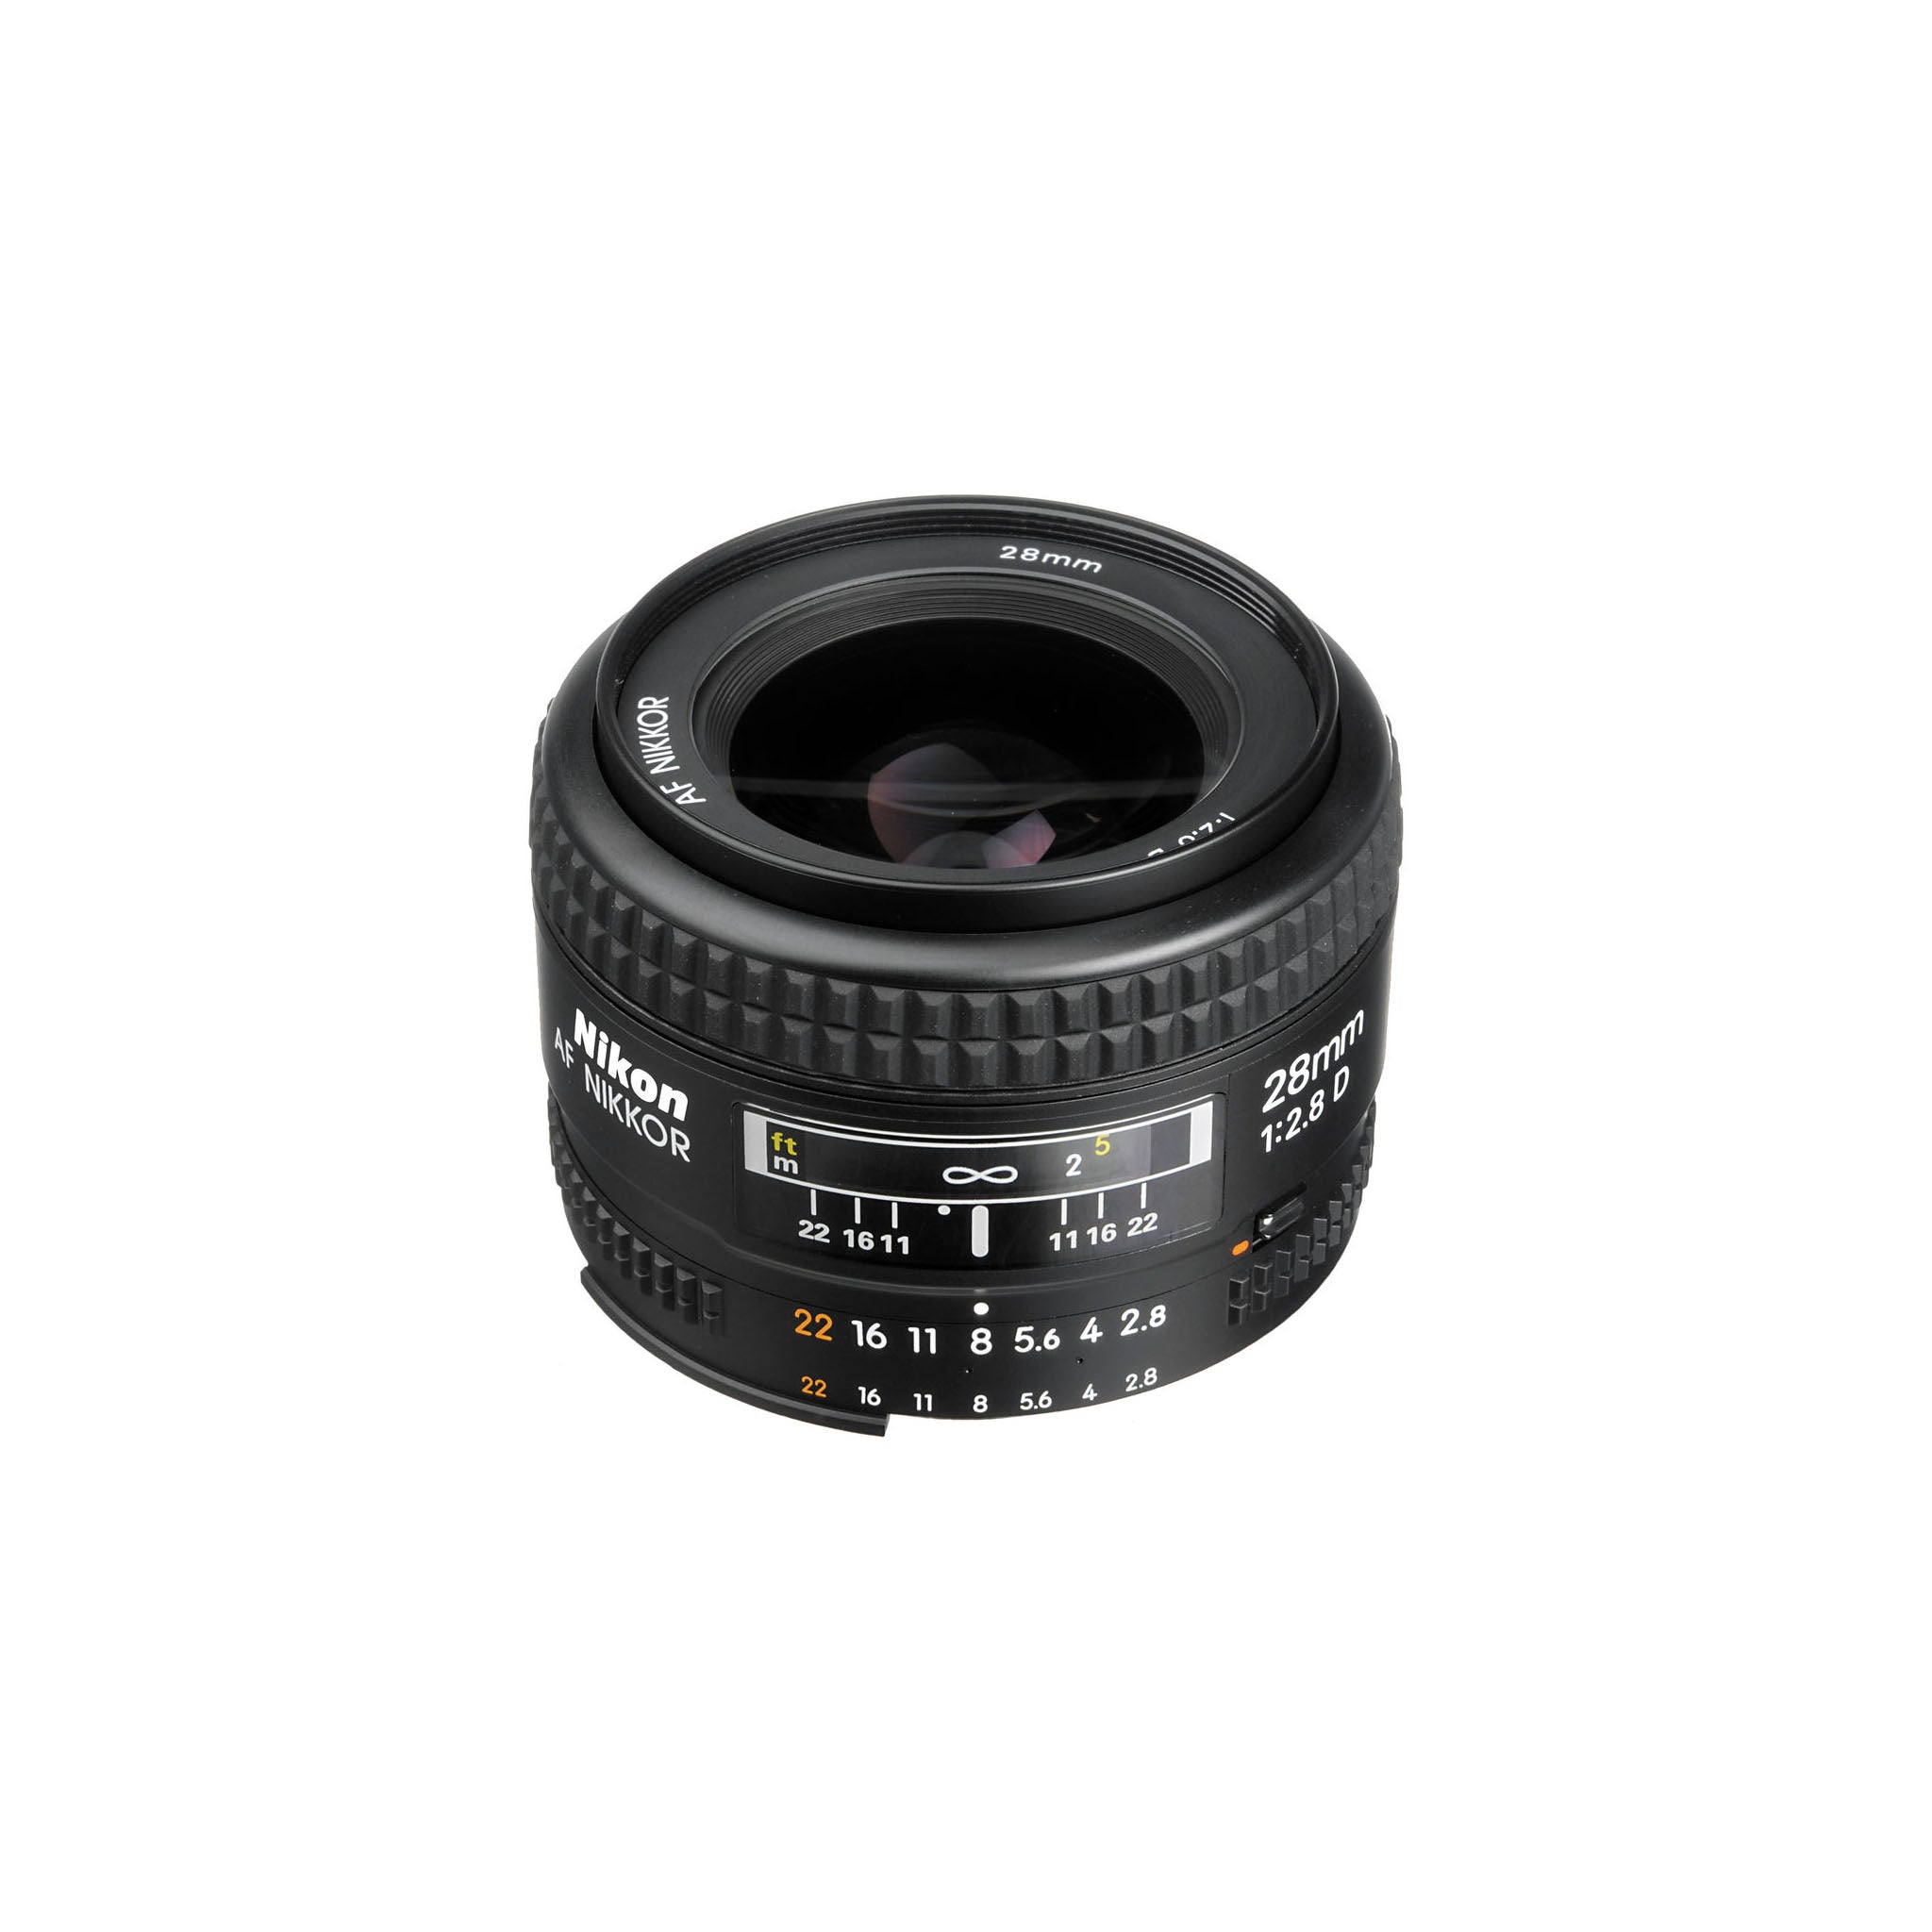 Nikon AF 28mm F2.8D Lens